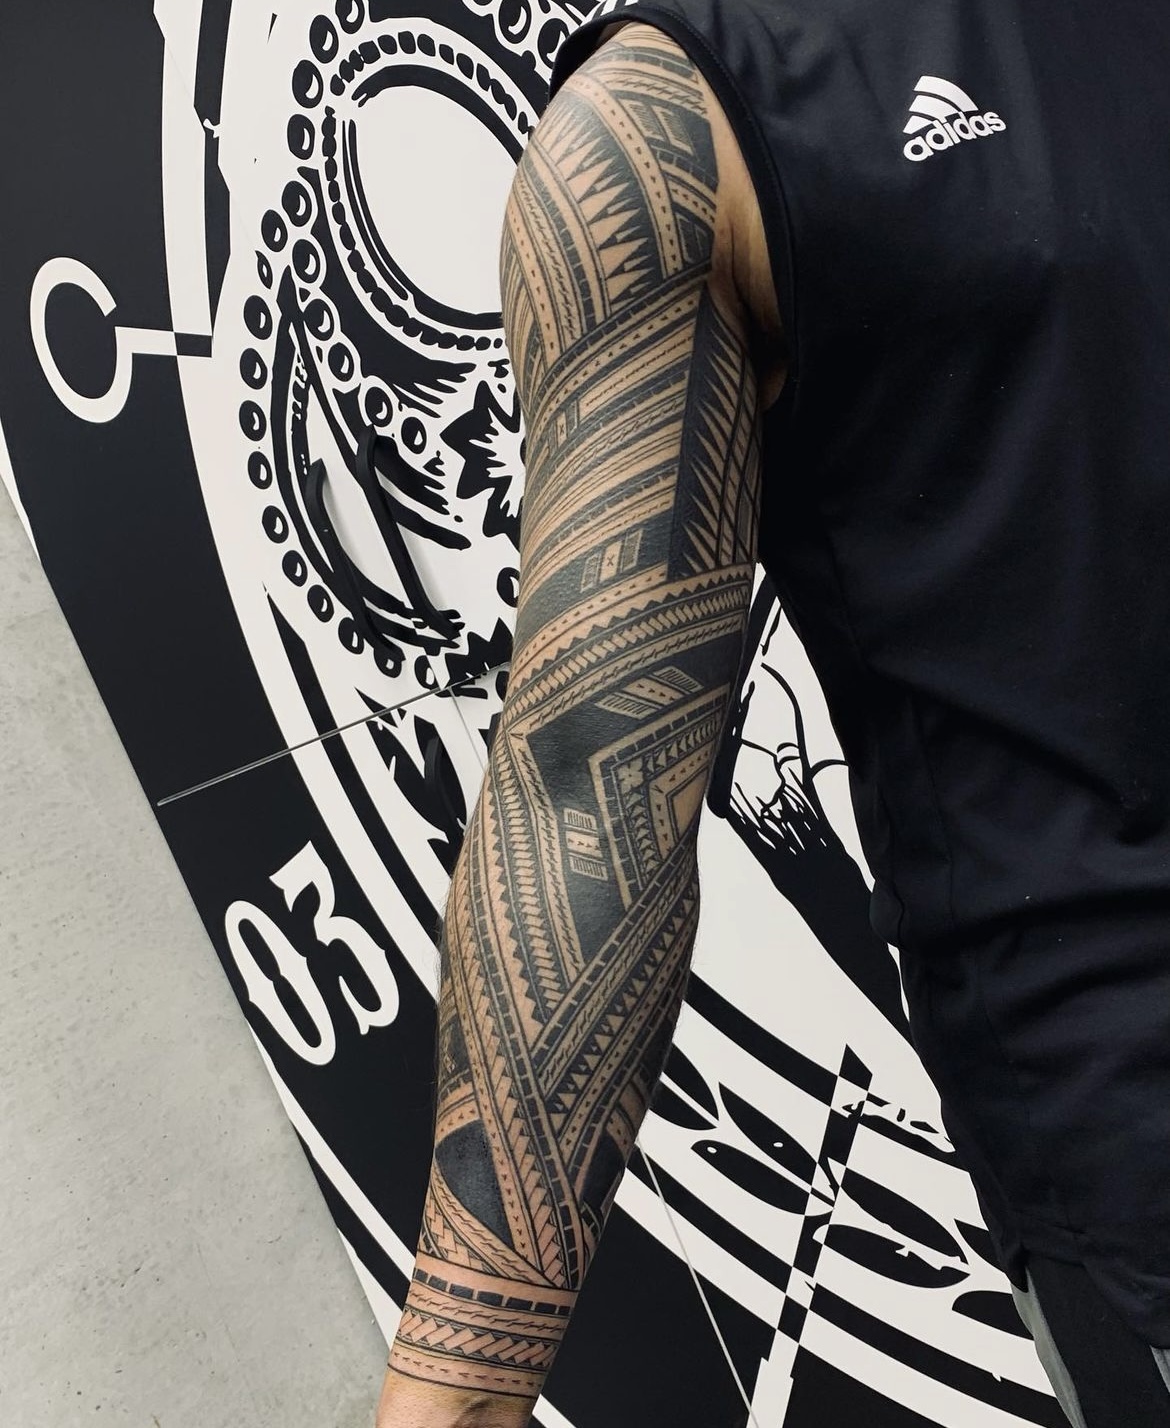 Fijian Tattoo Ideas | TikTok